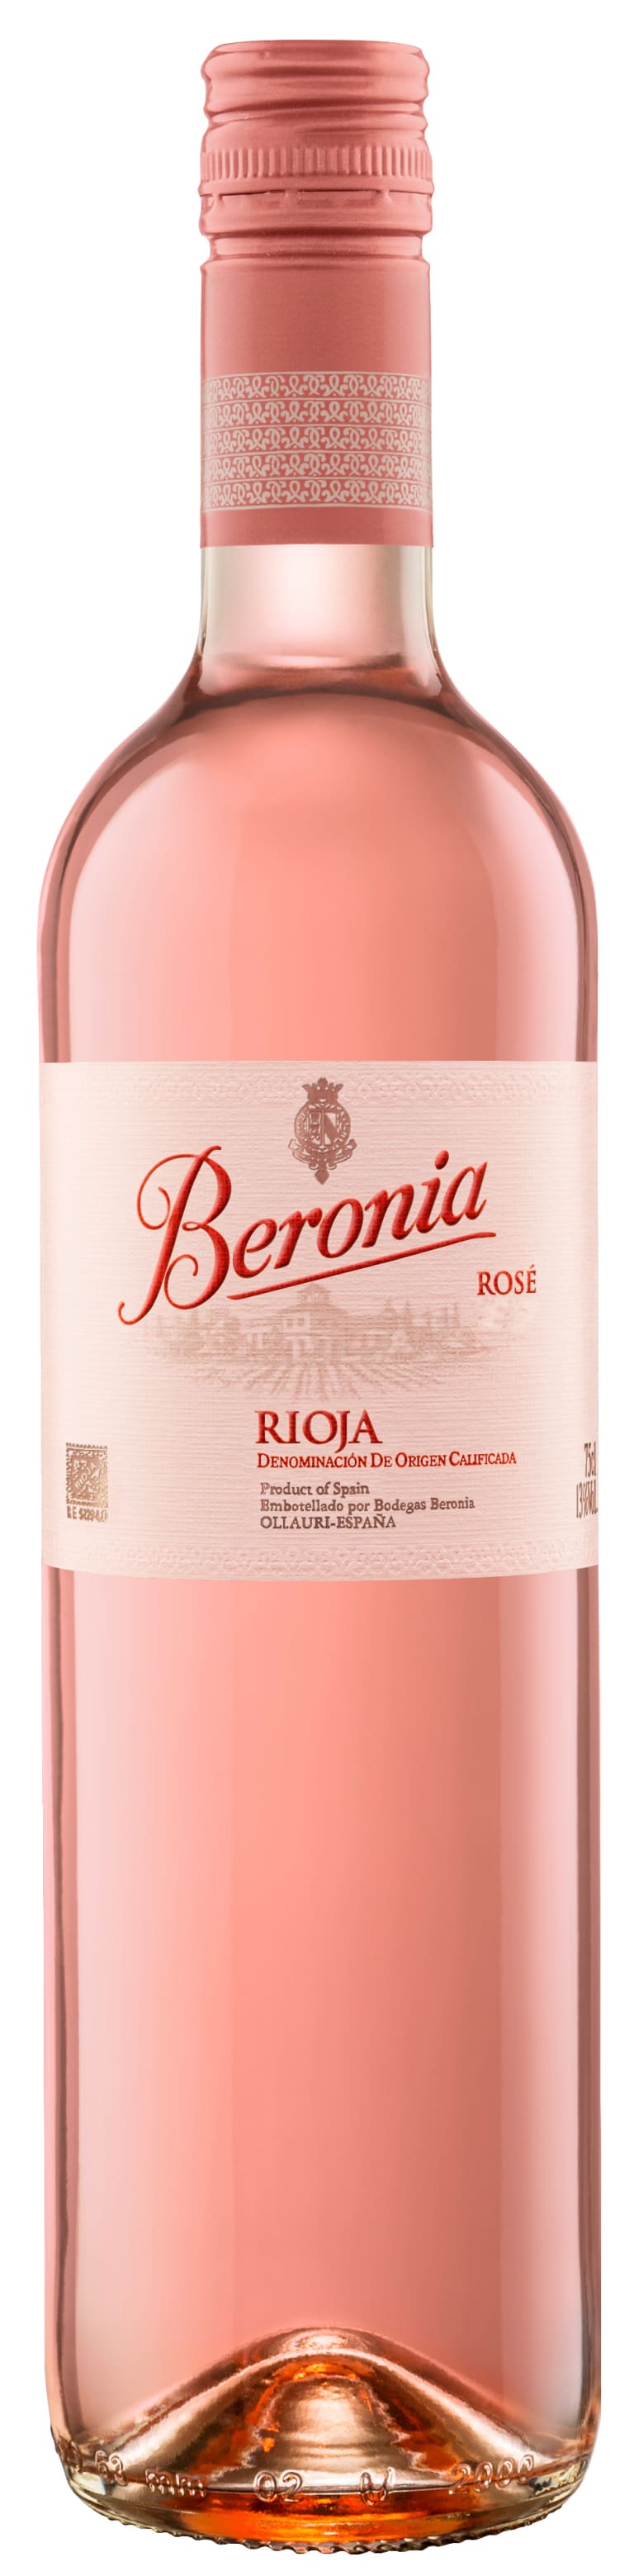 Beronia Rioja Rose 2019